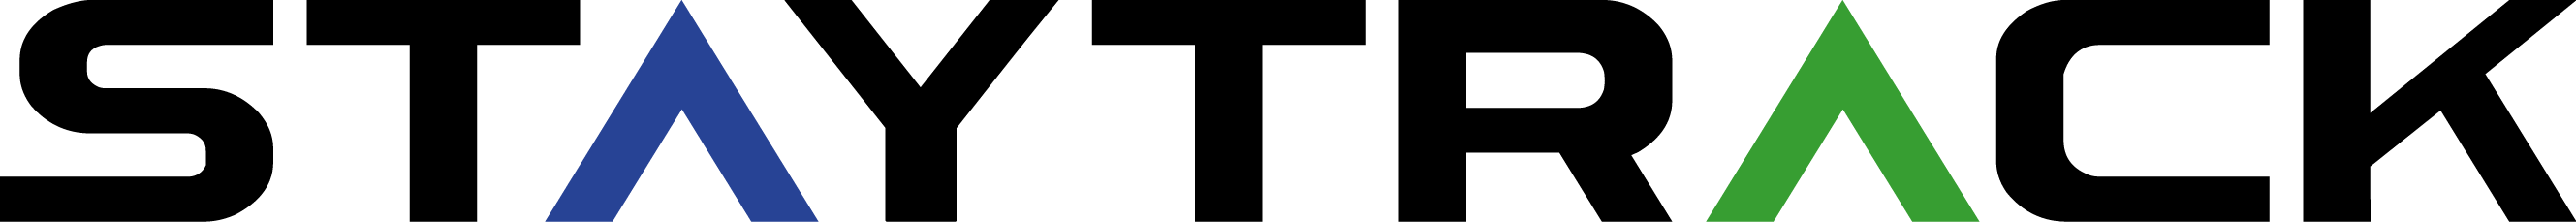 Logotipo Staytrack